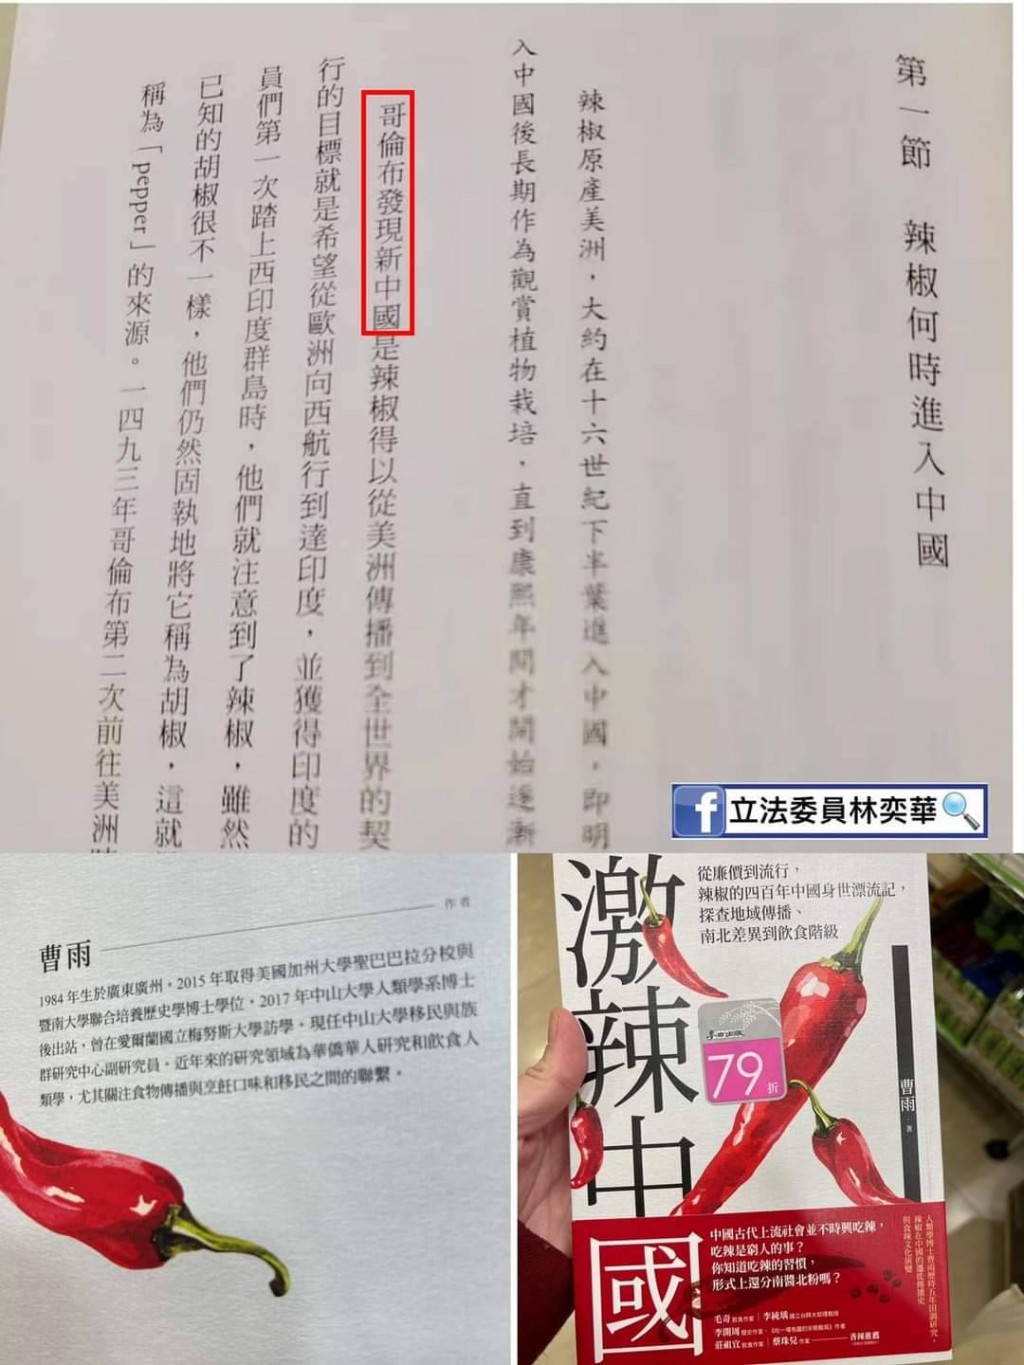 哥倫布發現「新中國」?! 台灣麥田出版社新書急下架